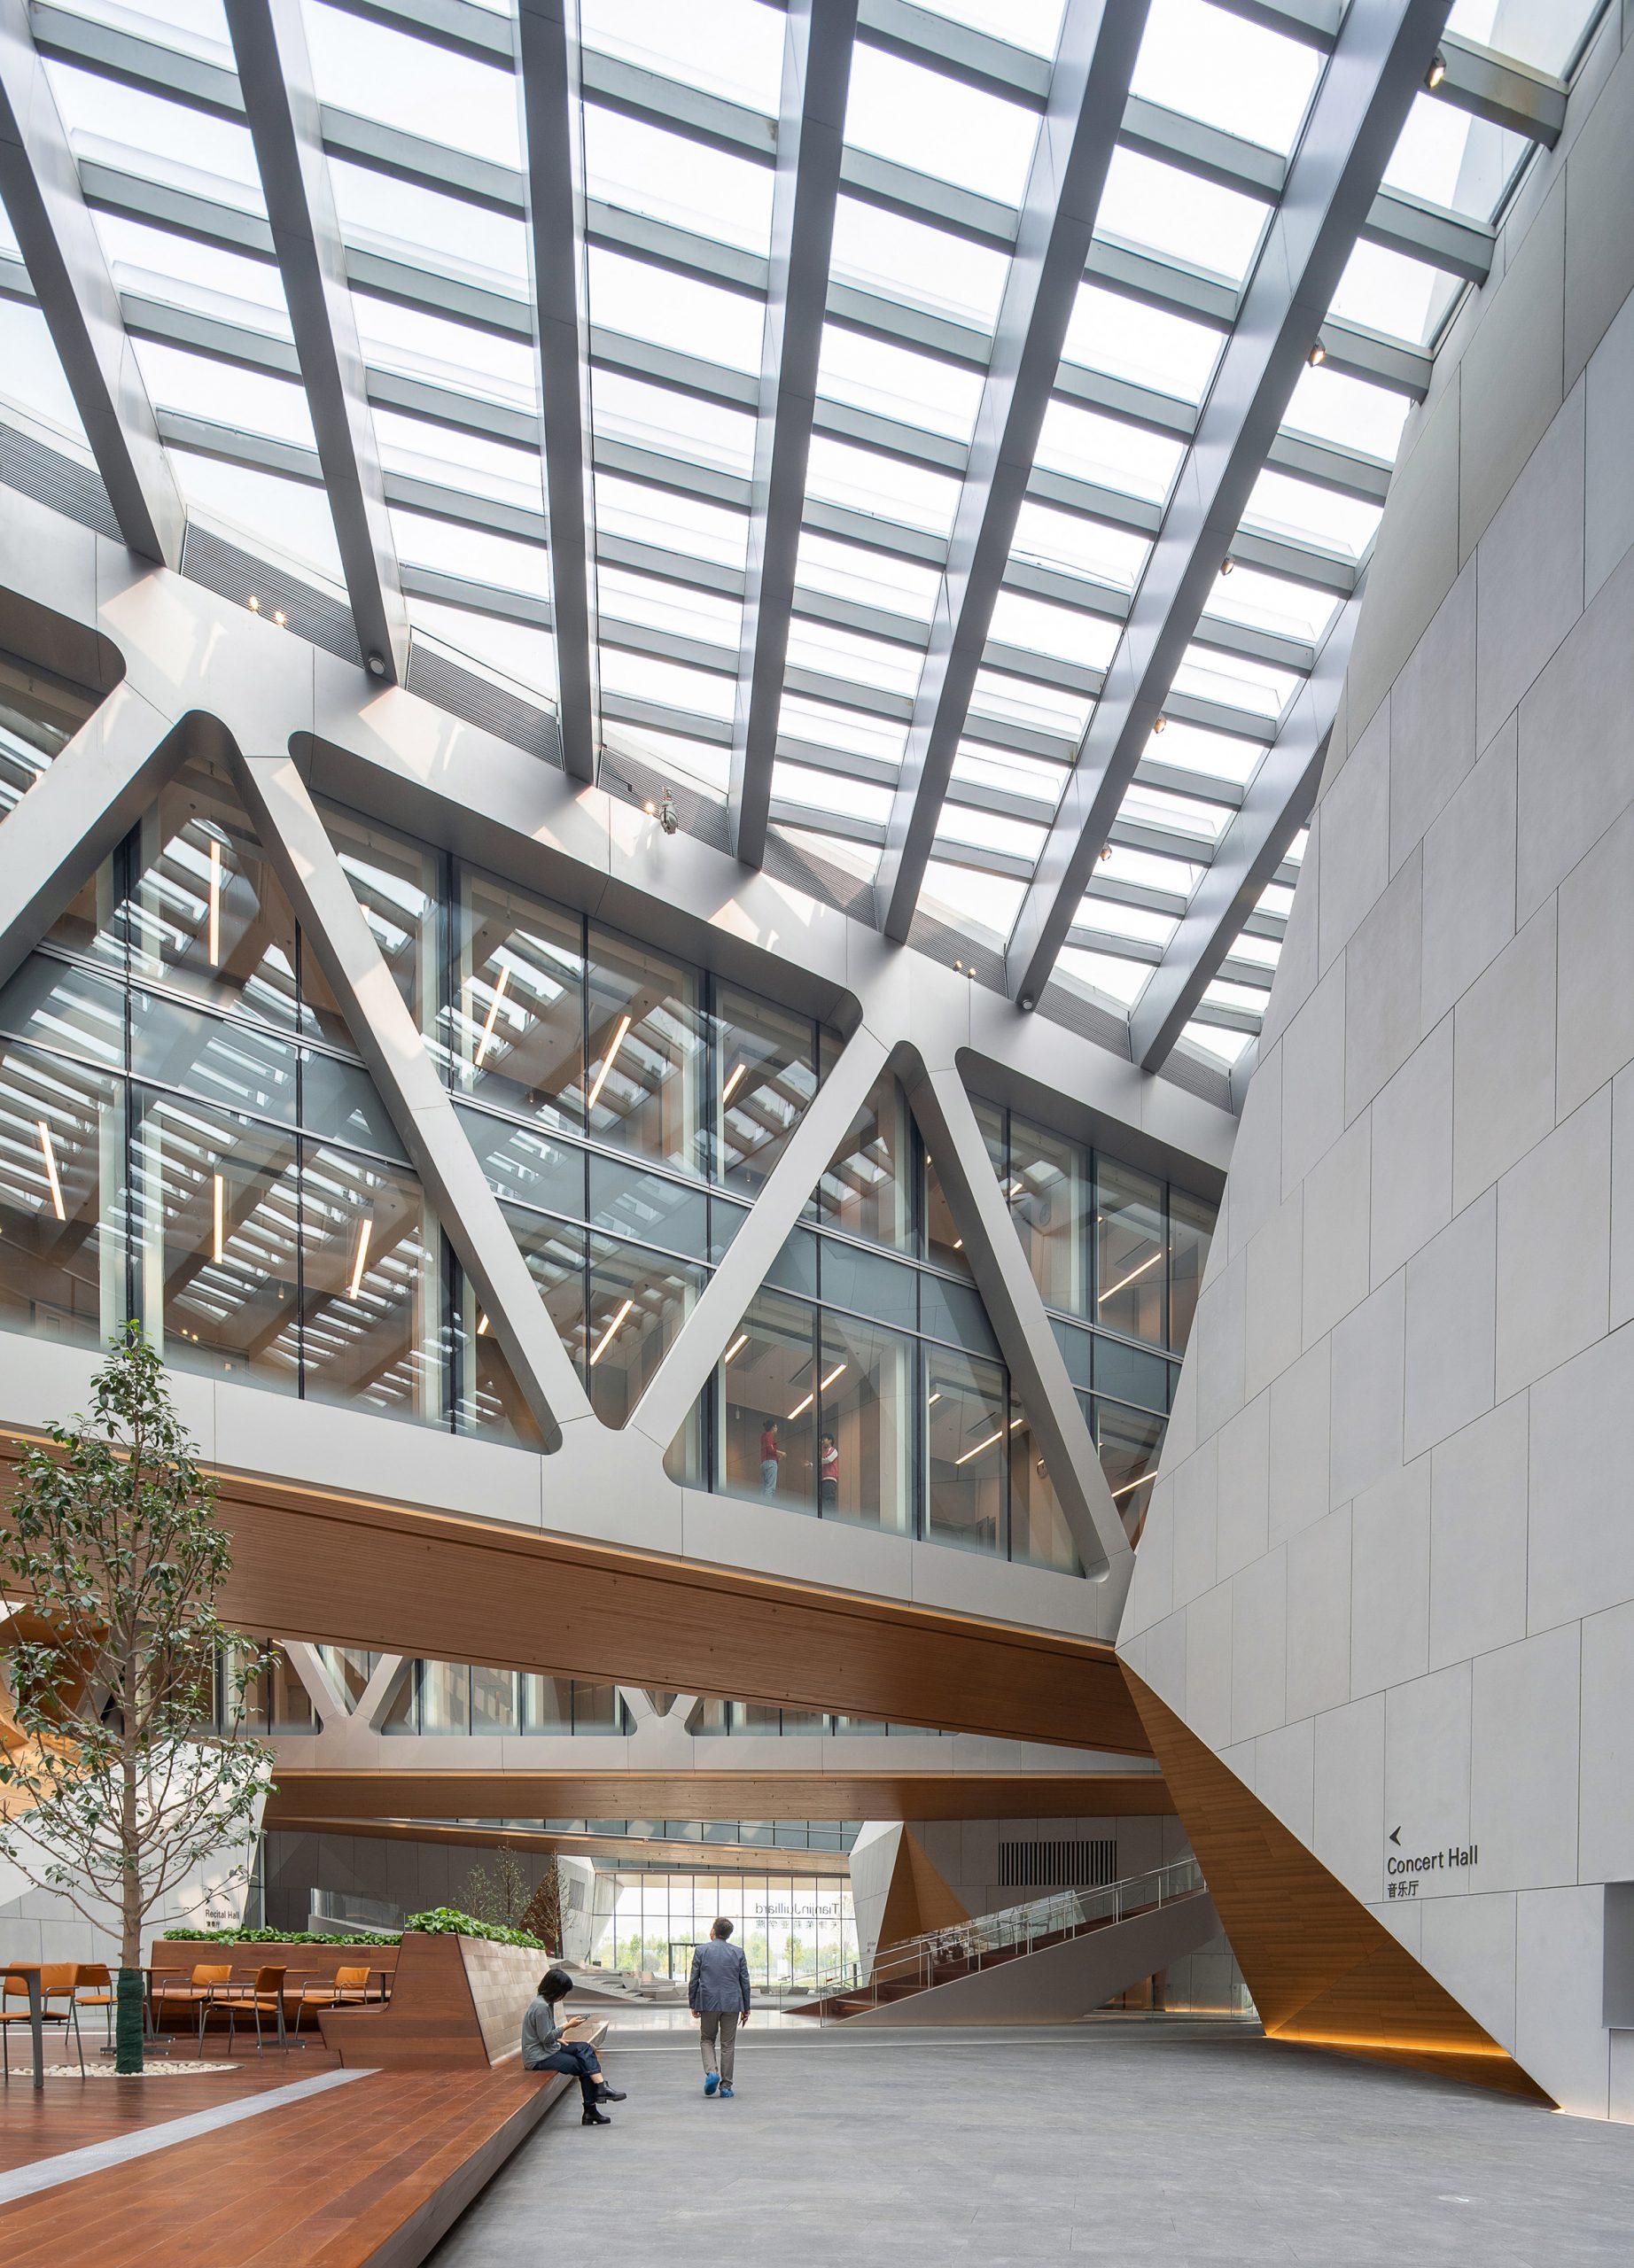 The lobby of the Tianjin Juilliard School